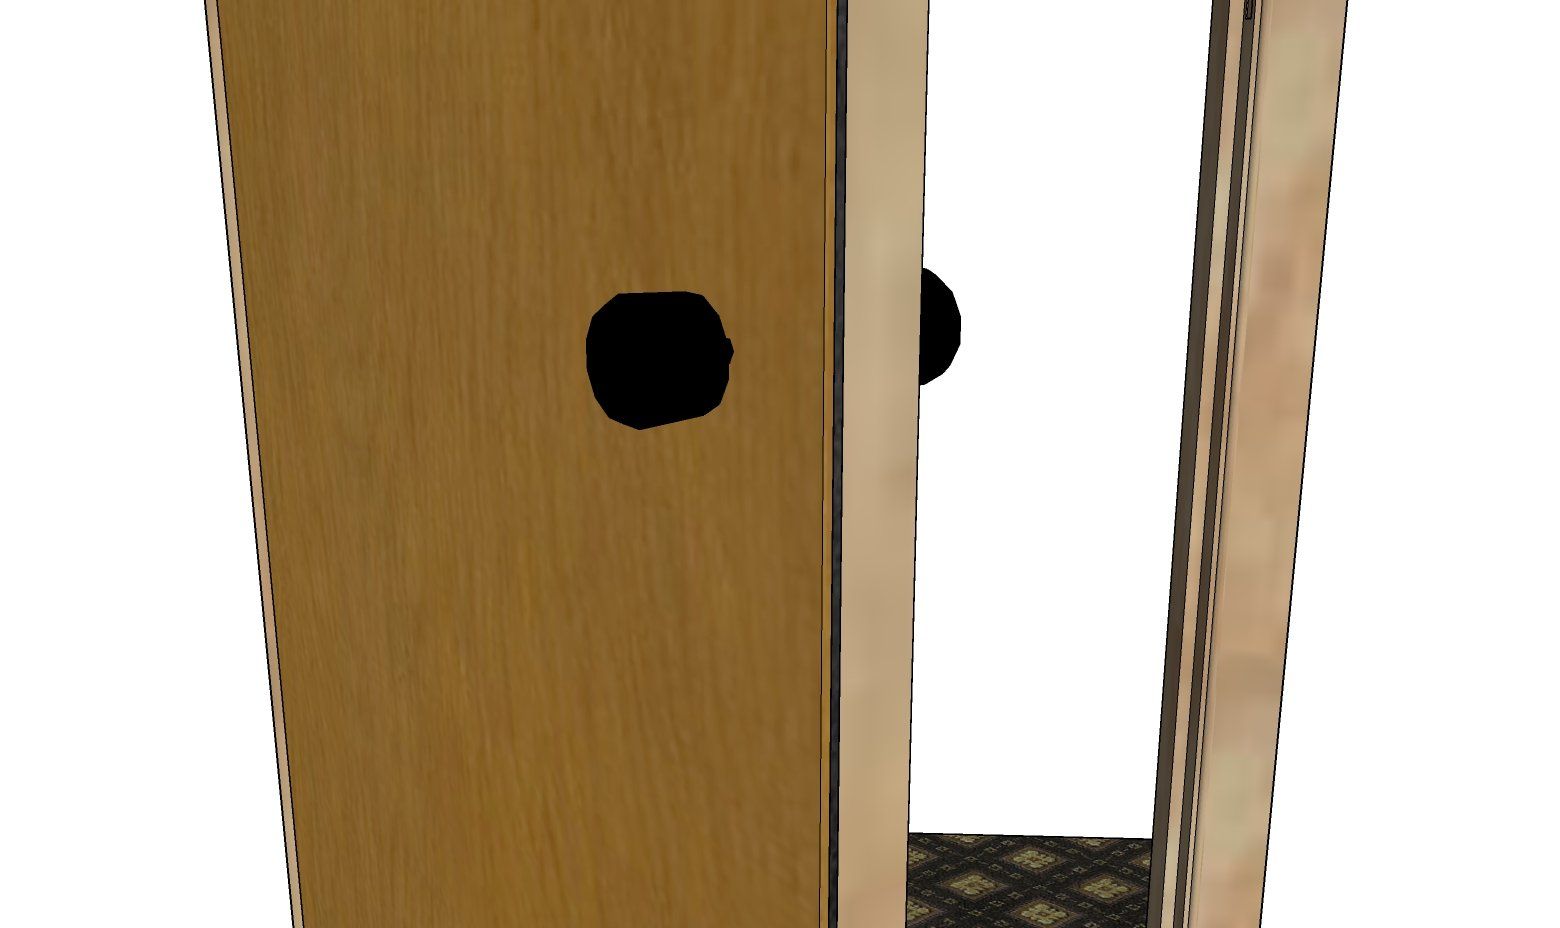 Side view of soundproof door